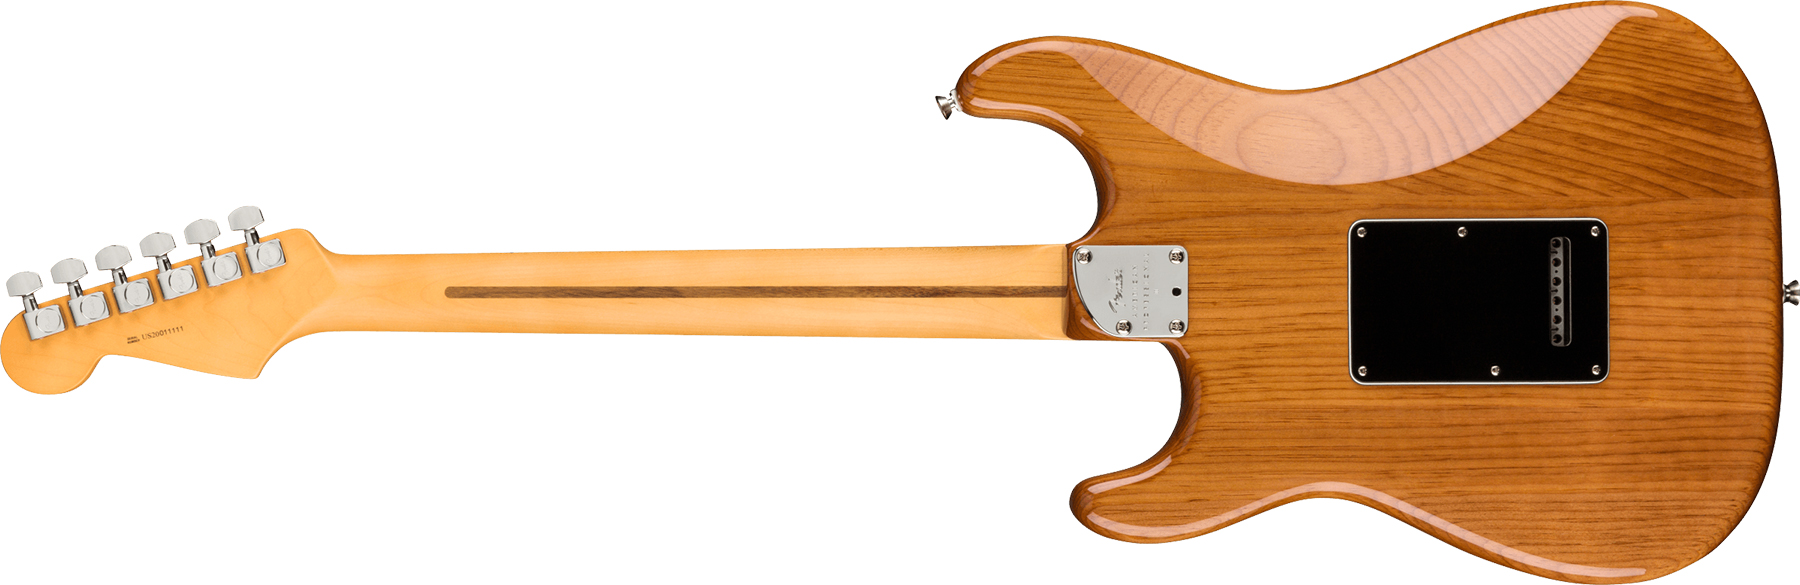 Fender Strat American Professional Ii Hss Usa Mn - Roasted Pine - Elektrische gitaar in Str-vorm - Variation 1